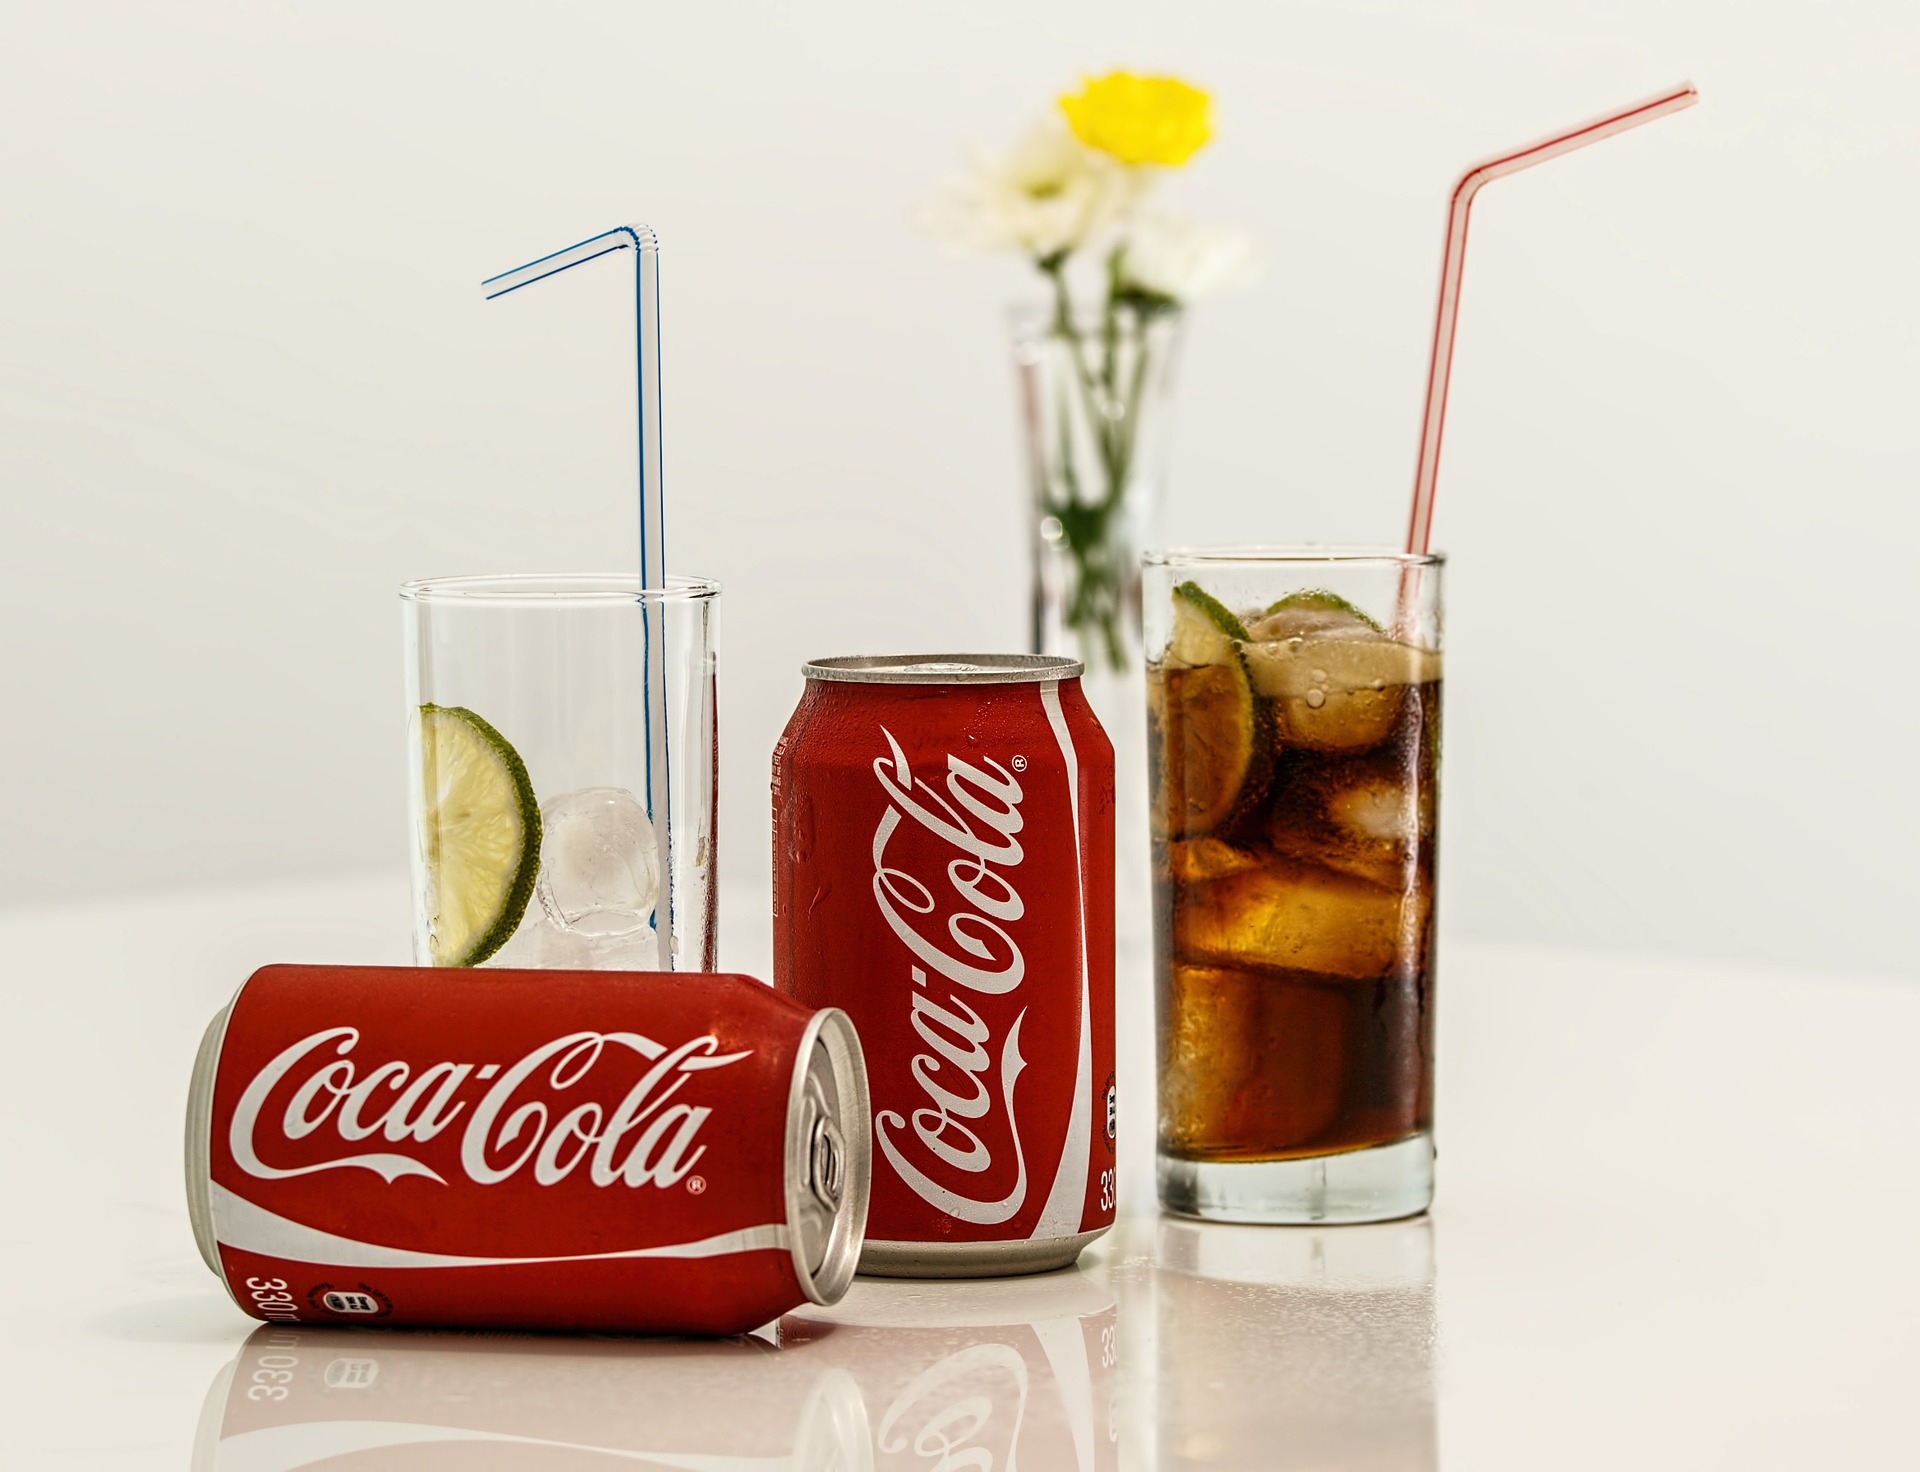 Comment Coca Cola contourne la taxe soda